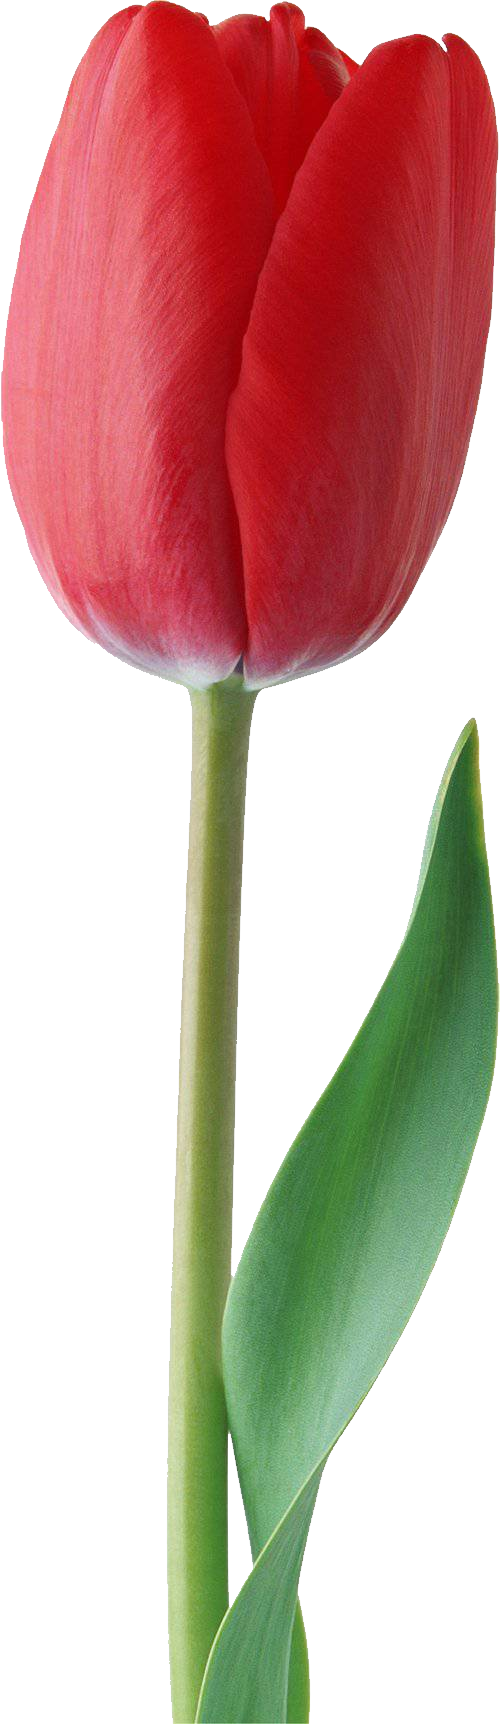 Tulip merah